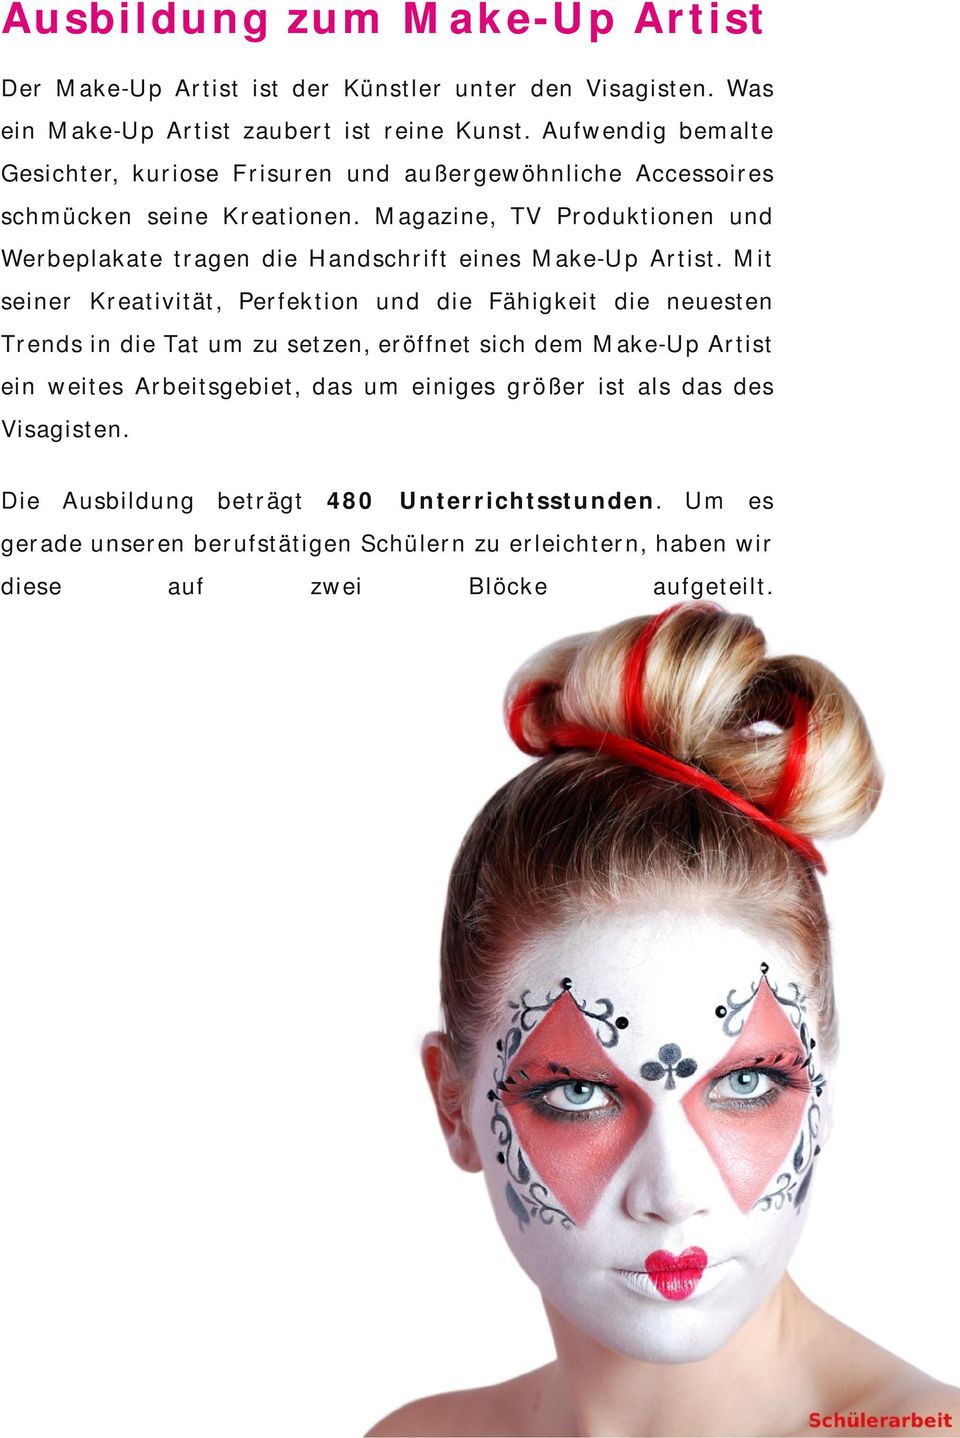 Magazine, TV Produktionen und Werbeplakate tragen die Handschrift eines Make-Up Artist.